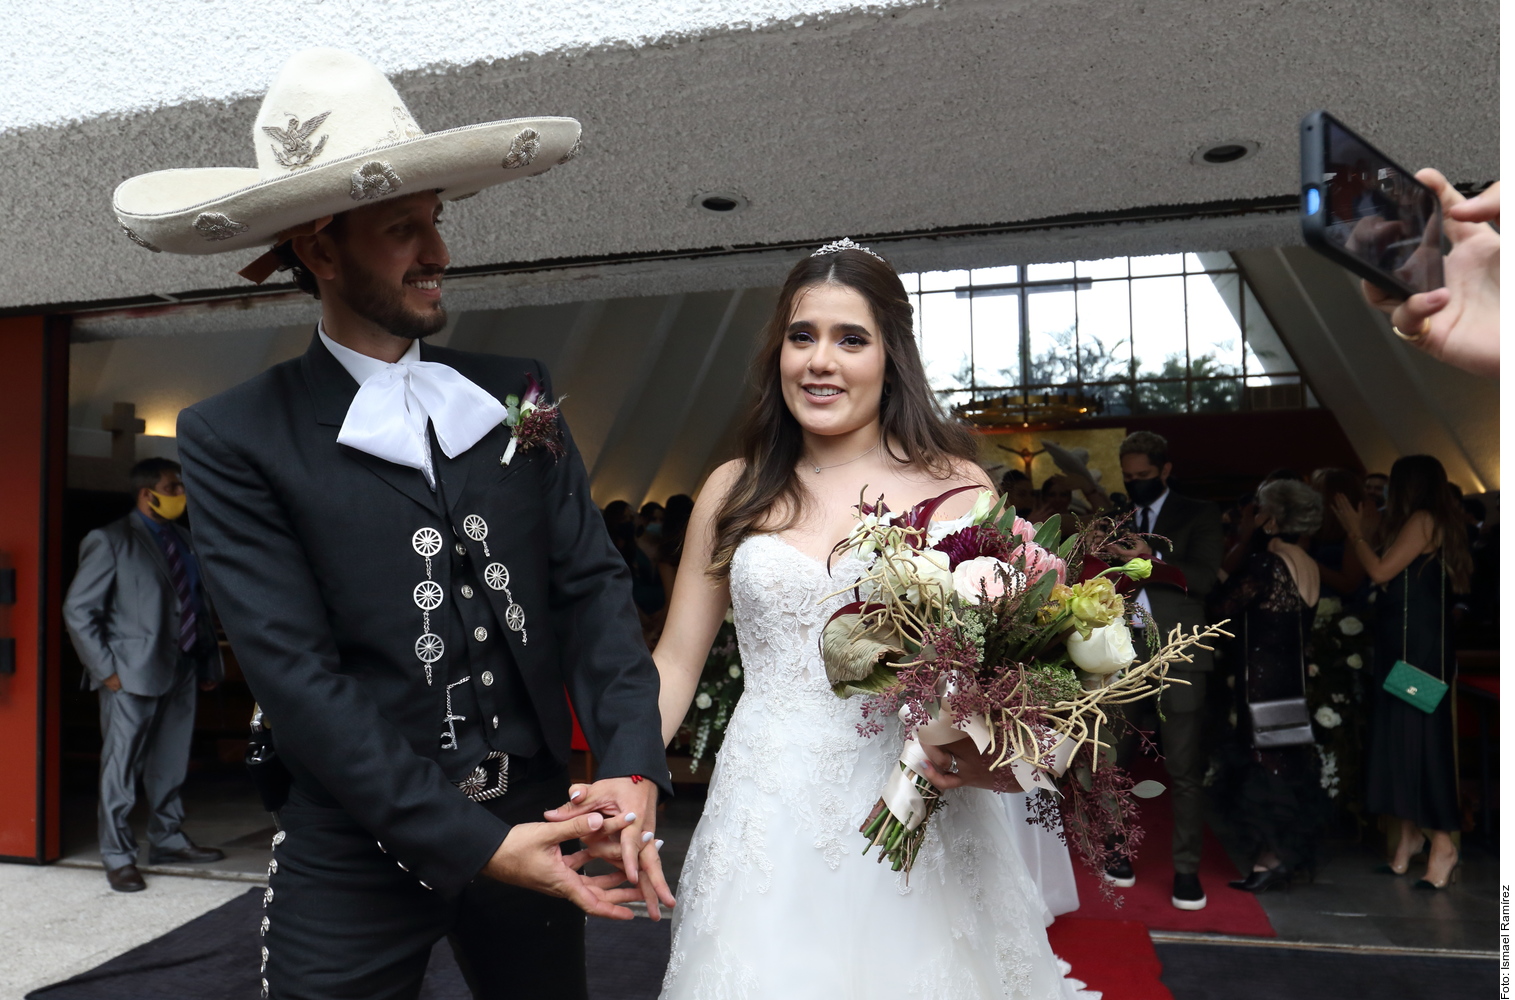 This was Camila Fernández's wedding: “El Potrillo” sang to the bride and groom